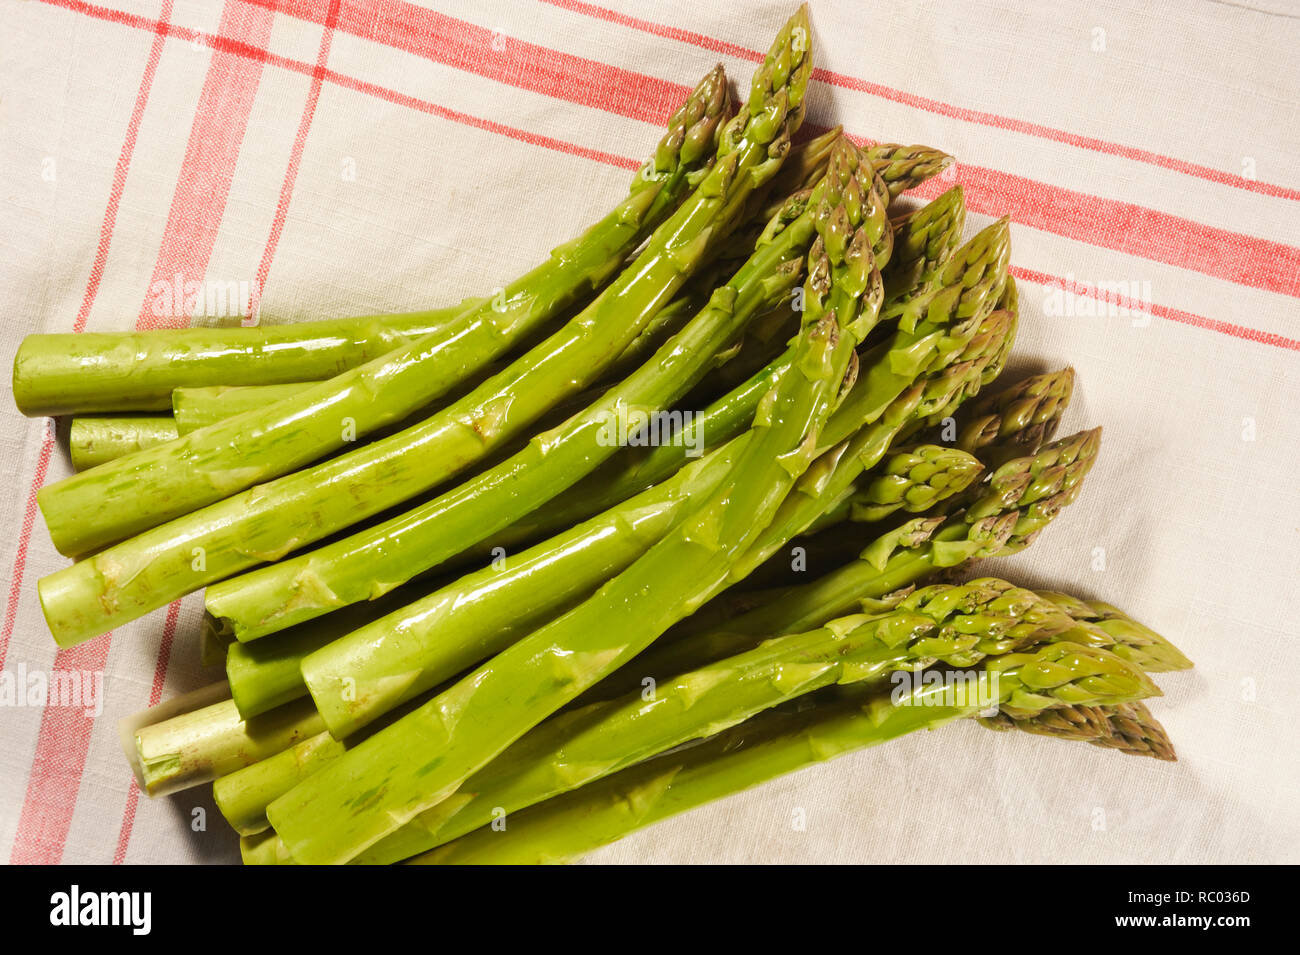 Grüner Stangenspargel | asparago verde Foto Stock